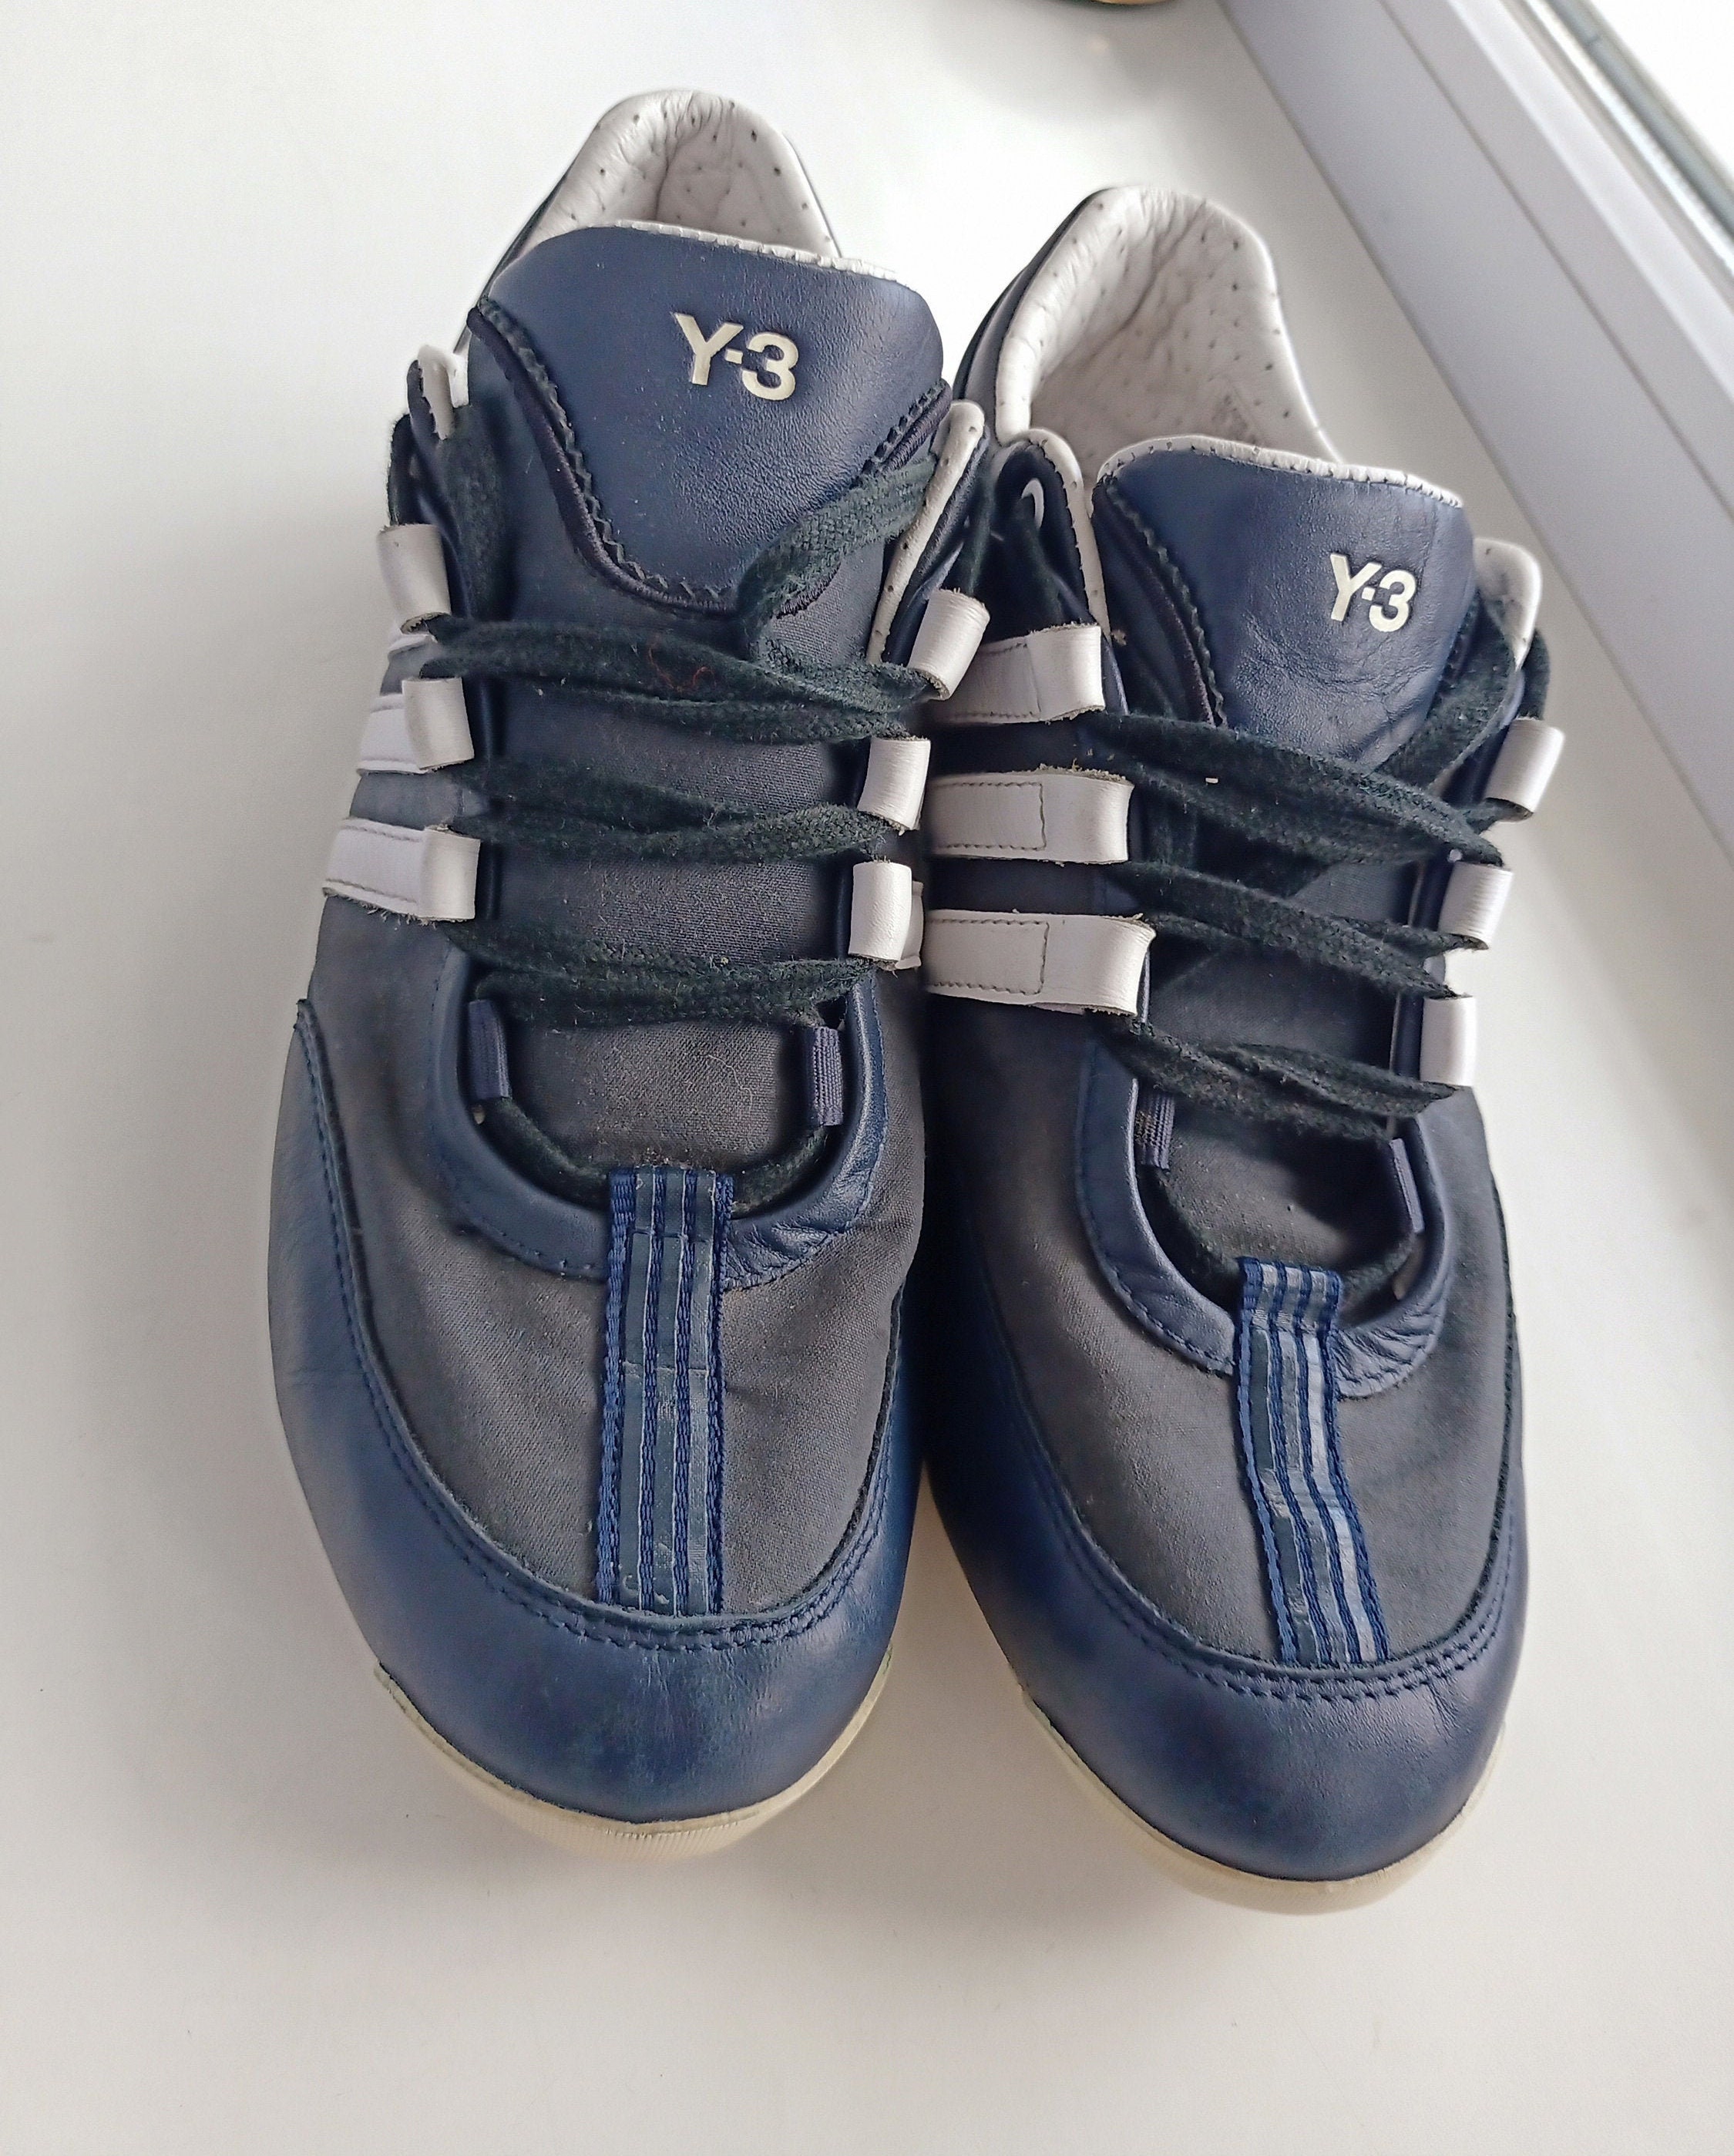 Hazlo pesado Para aumentar Adoración Adidas Yohji Yamamoto Y3 Mens Trainers Sneakers Size UK 6 EUR - Etsy